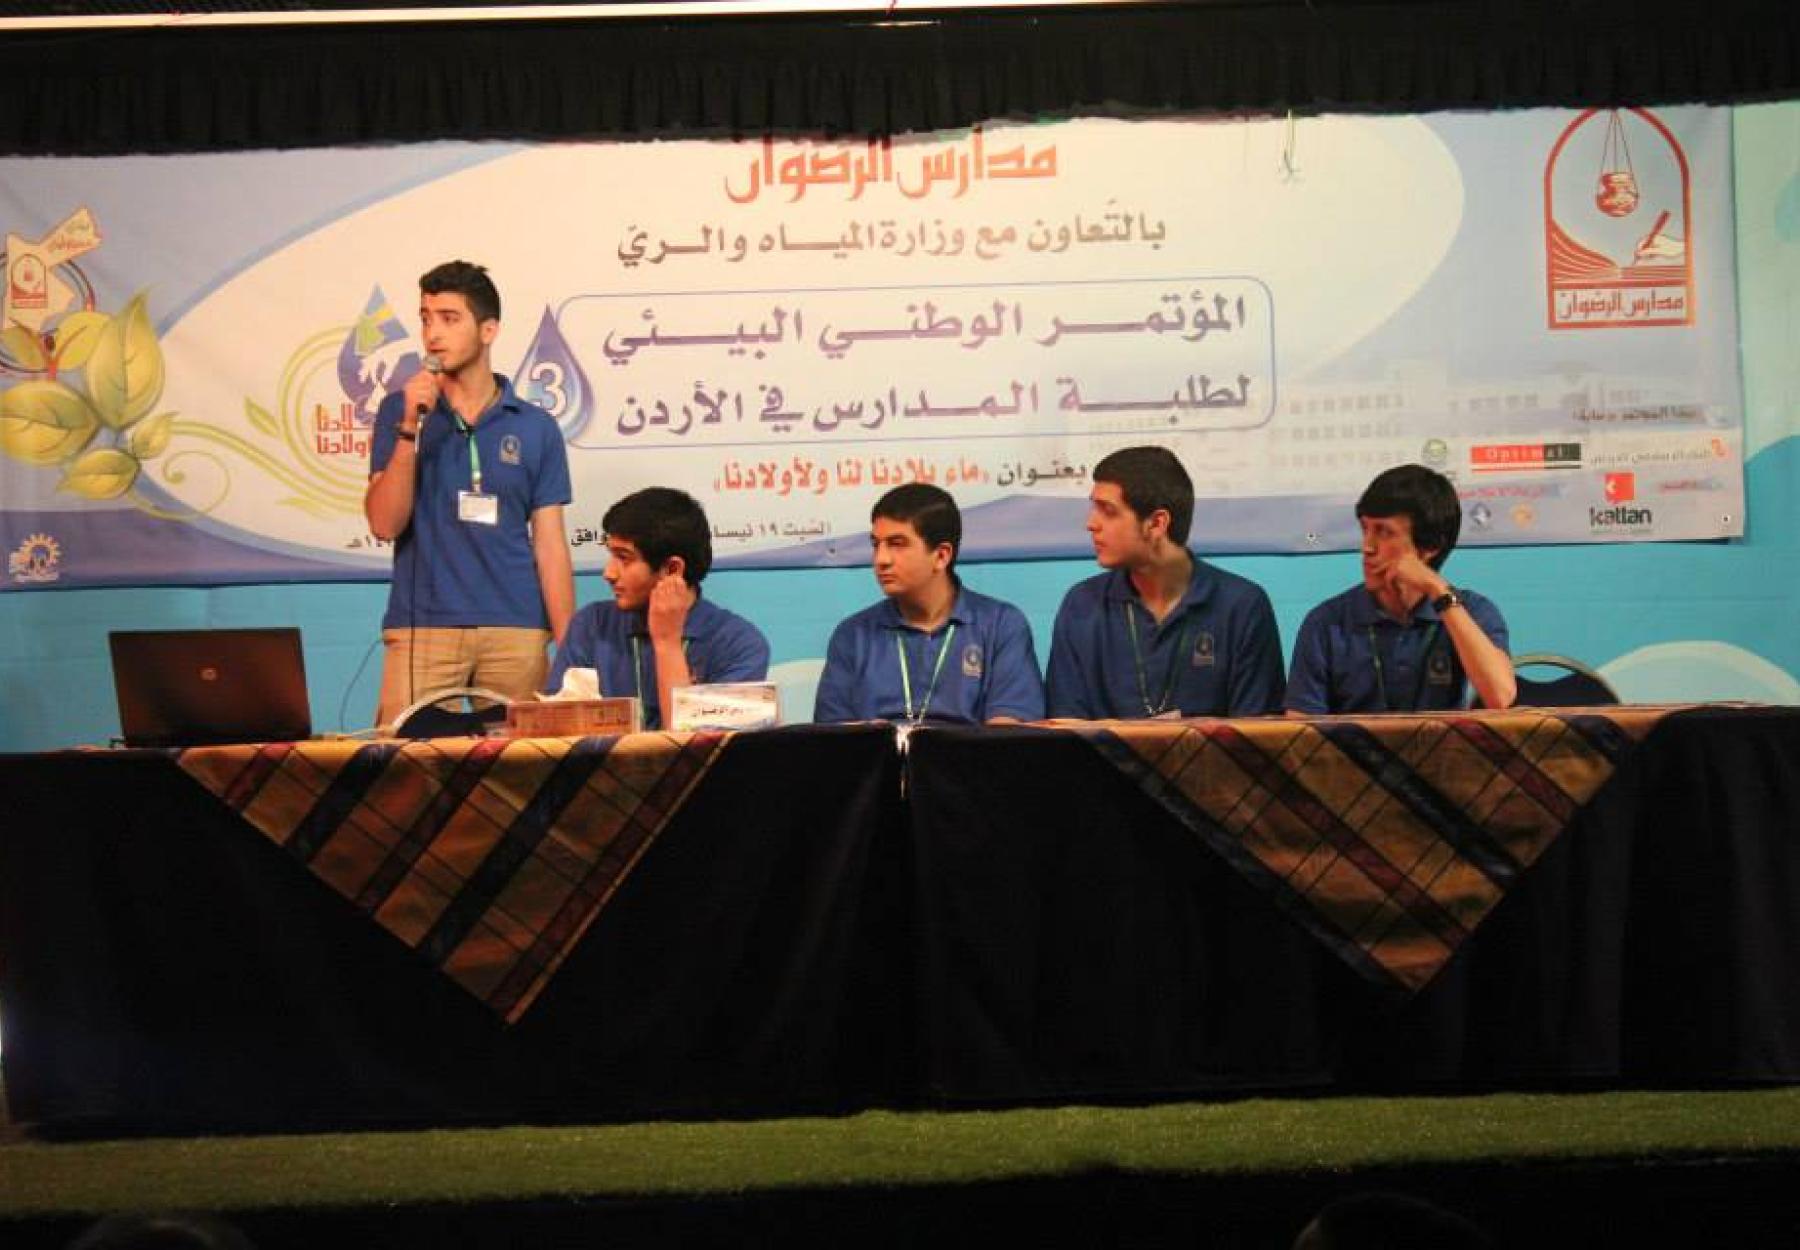 العربية تشارك في المؤتمر الوطني البيئي الثالث تحت عنوان "ماء بلادنا لنا ولأولادنا"